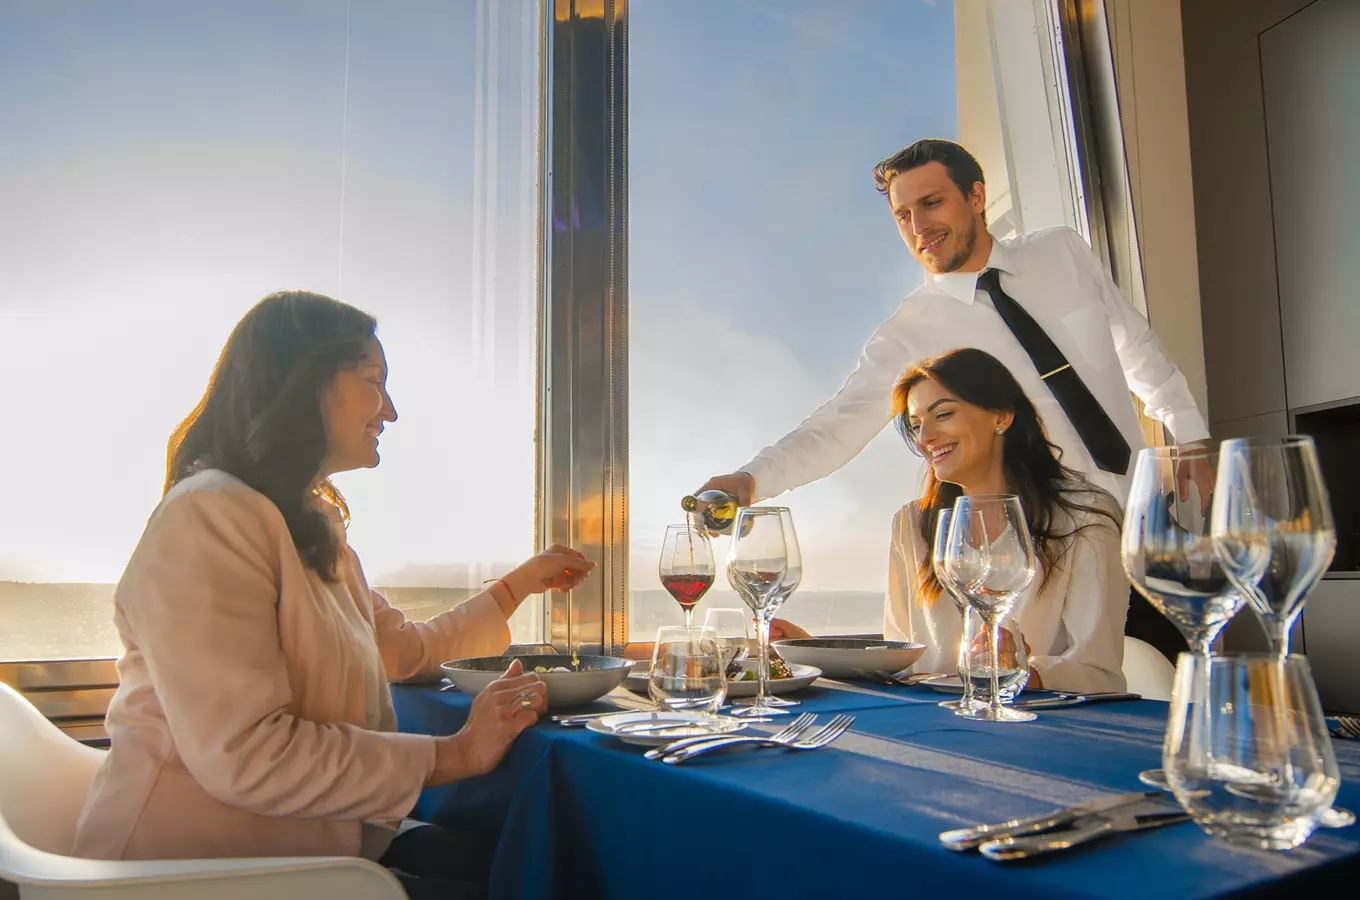 Restaurace Oblaca v Žižkovské věži – gastronomický zážitek 66 metrů nad zemí